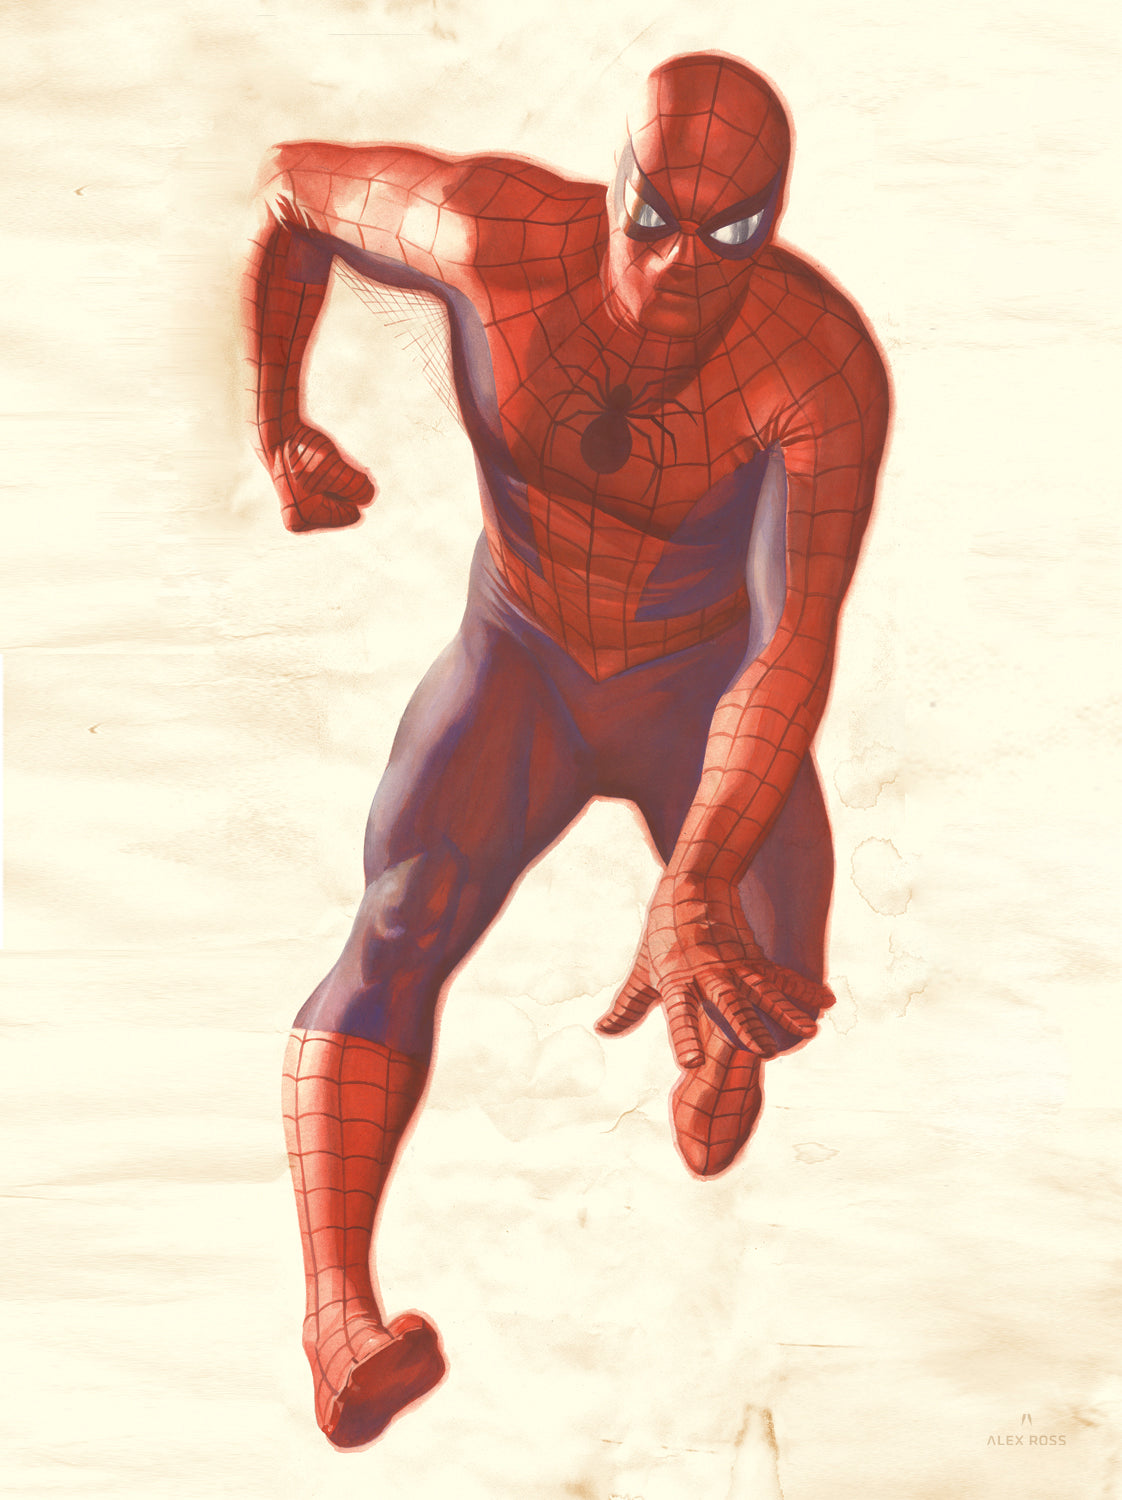 Your Friendly Neighborhood Spider-Man Lithograph – Alex Ross Art